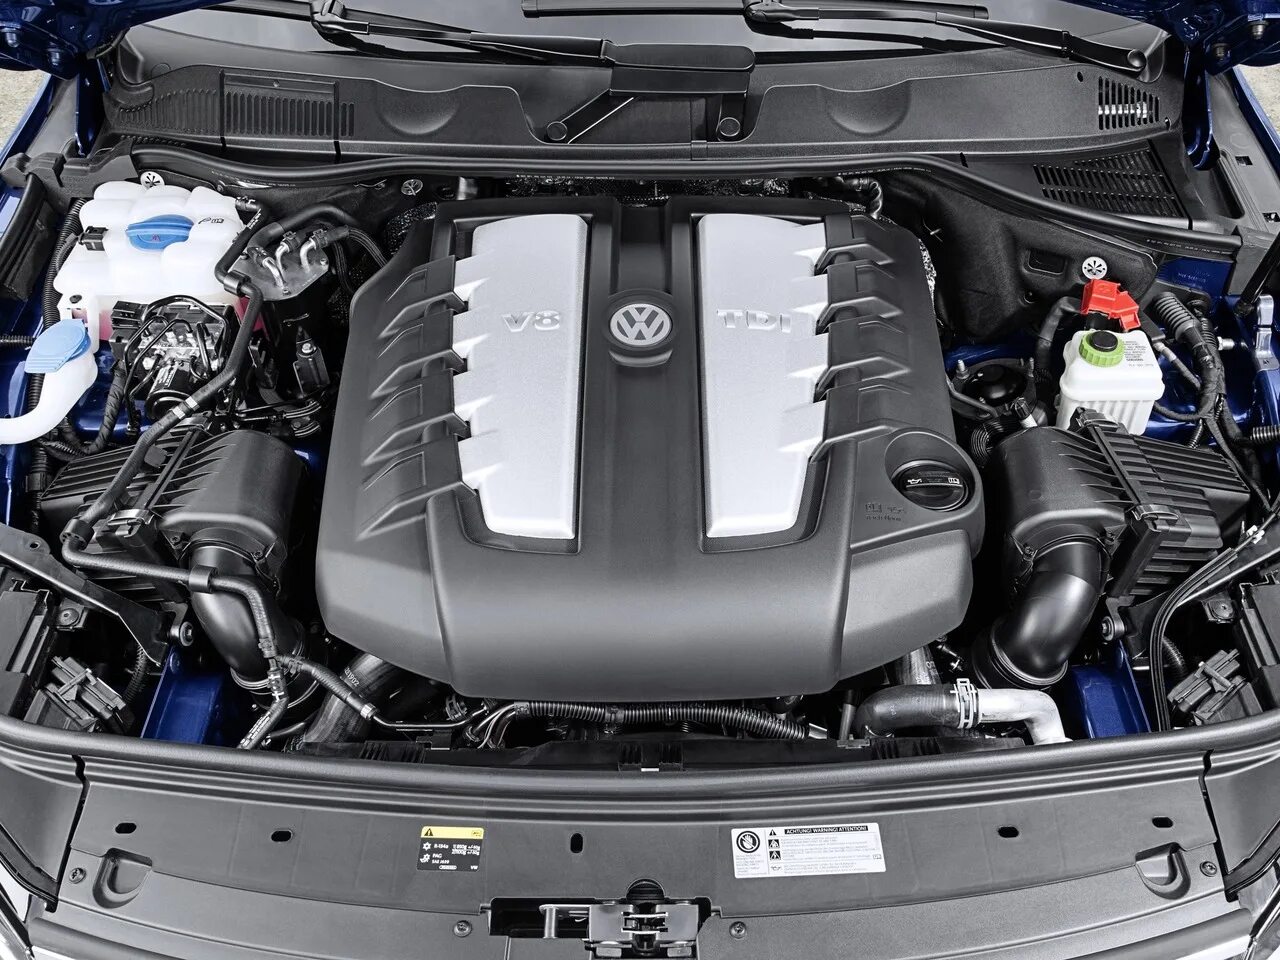 Двигатель Volkswagen Touareg 4 и 2. Двигатель Фольксваген Туарег 3.0 дизель. Туарег 2014 под капотом. Фольксваген Туарег под капотом.